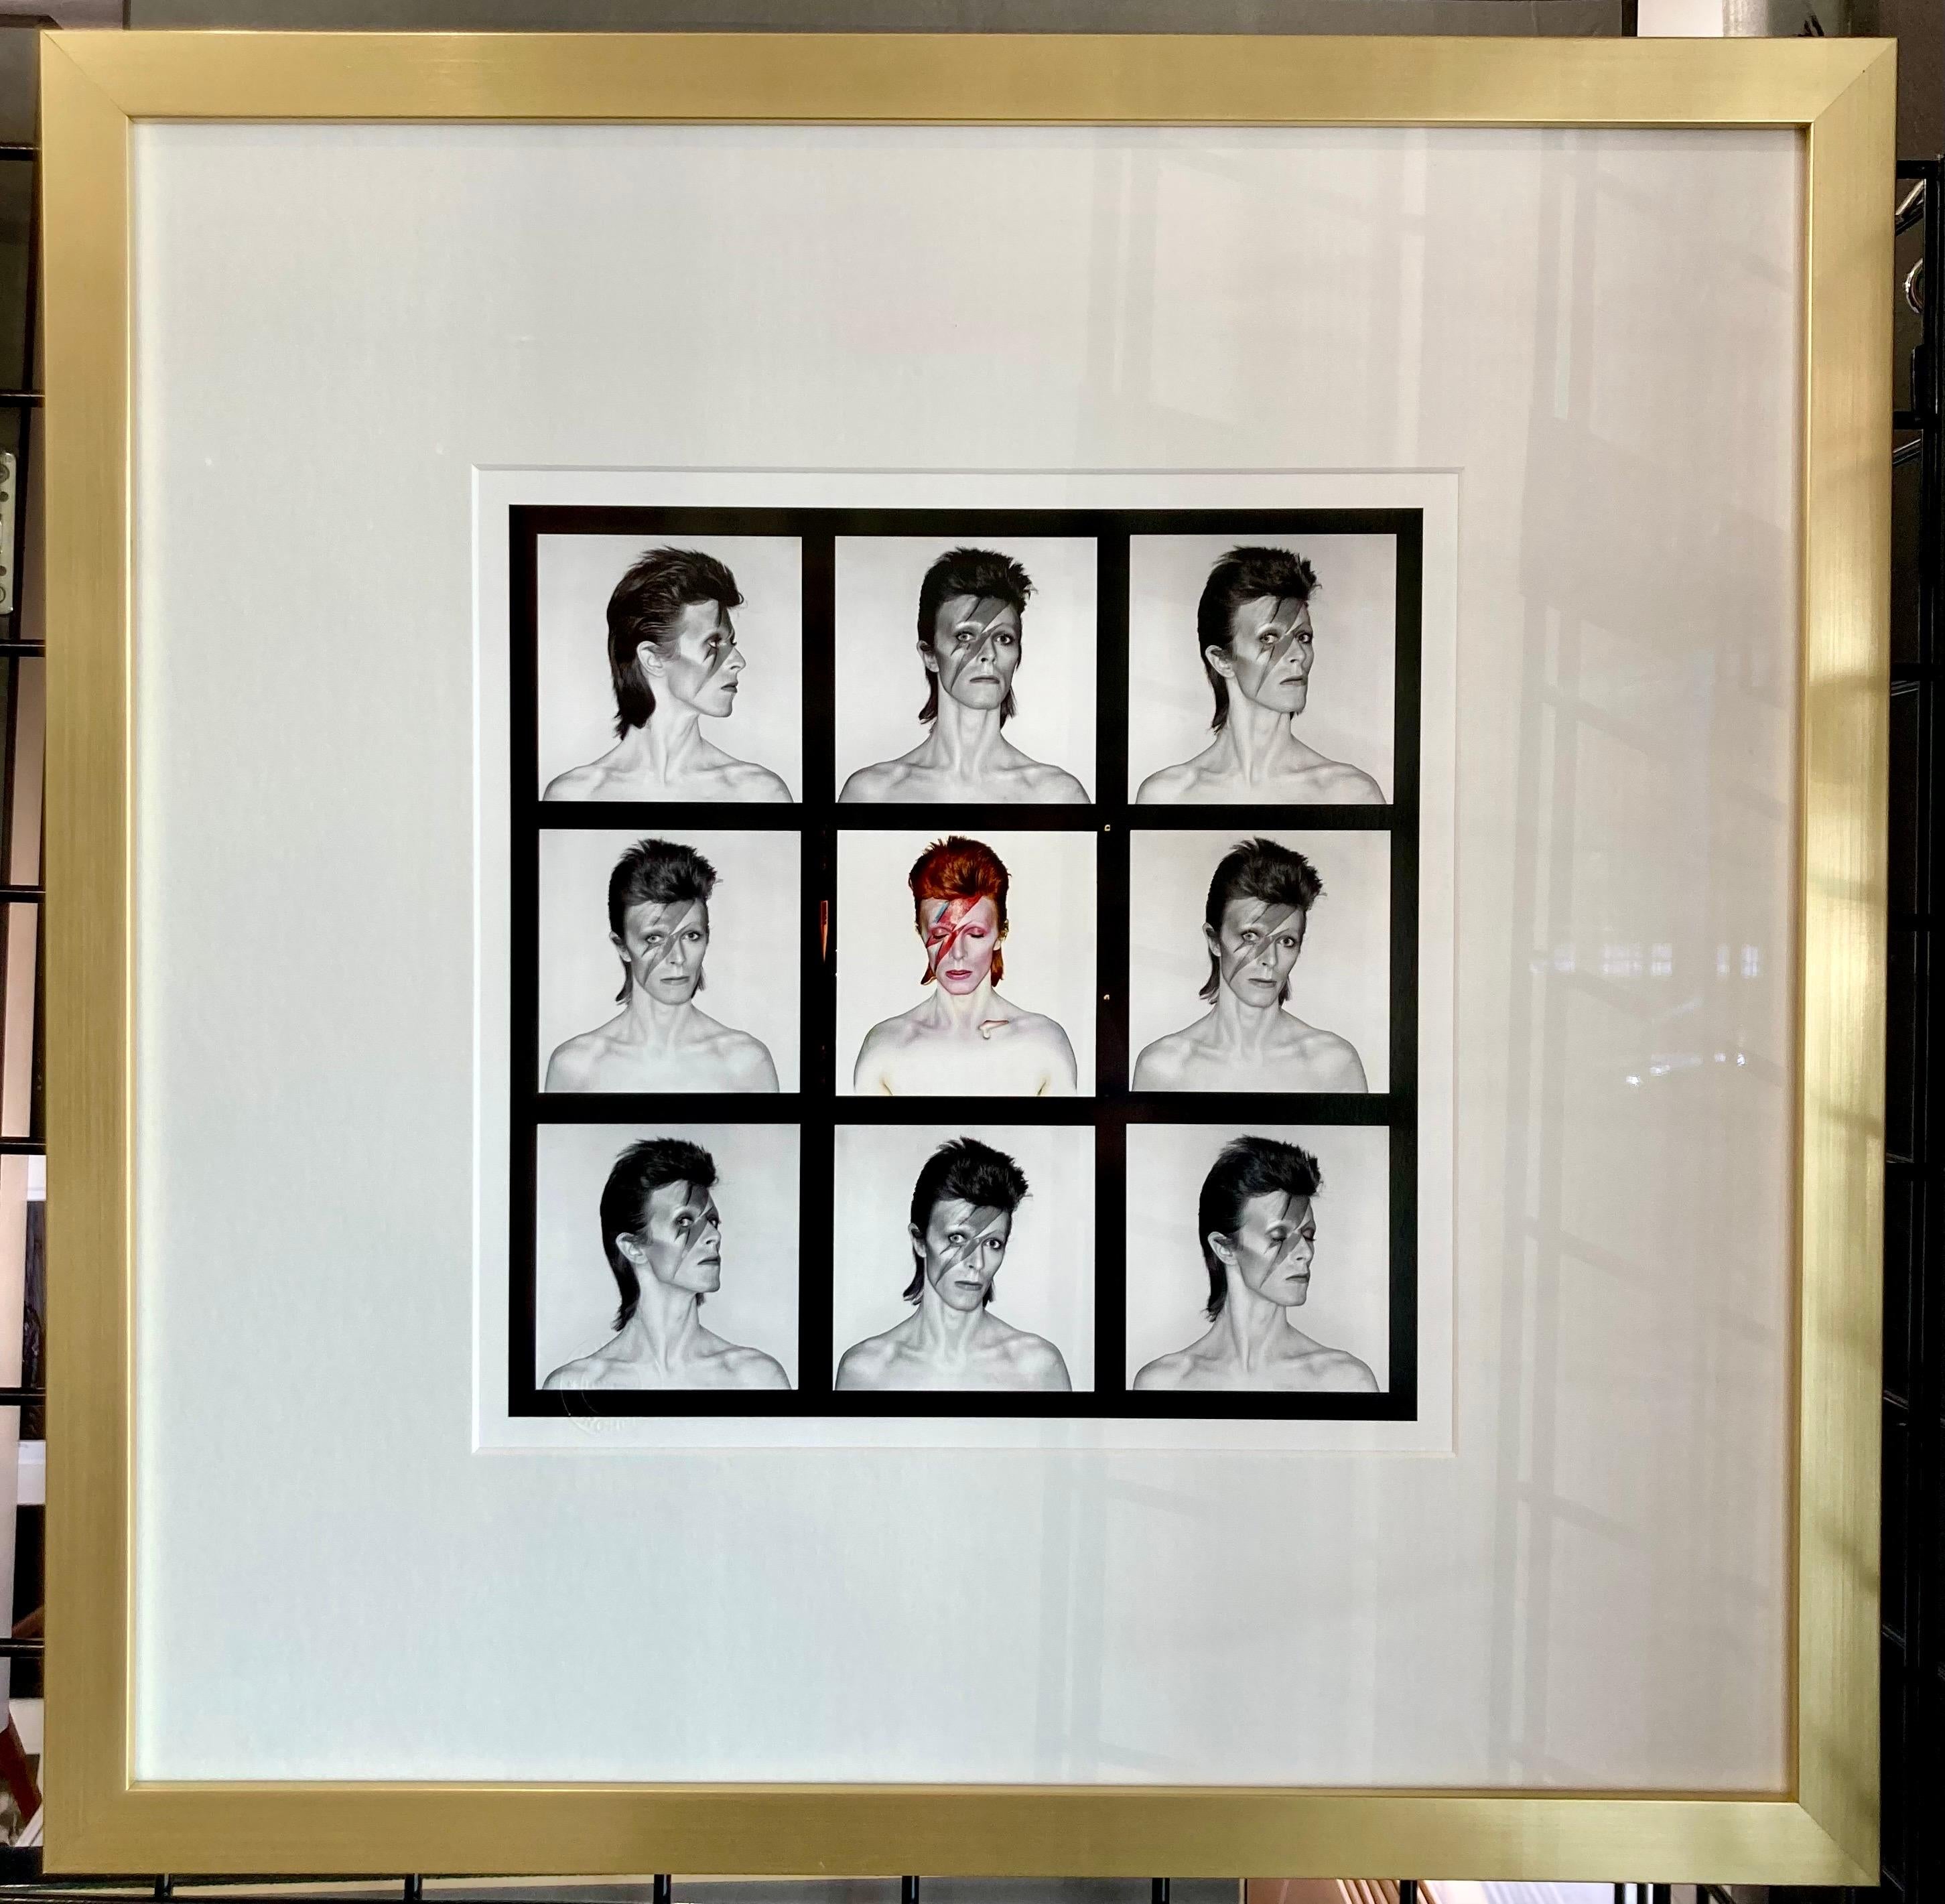 David Bowie Aladdin Sane Kontaktabzug von Brian Duffy, aufgenommen während des Fotoshootings für das Aladdin Sane Albumcover. Der Druck zeigt das Aladdin Sane-Albumcover in Farbe in der Mitte und verschiedene Outtakes in Schwarzweiß in den übrigen